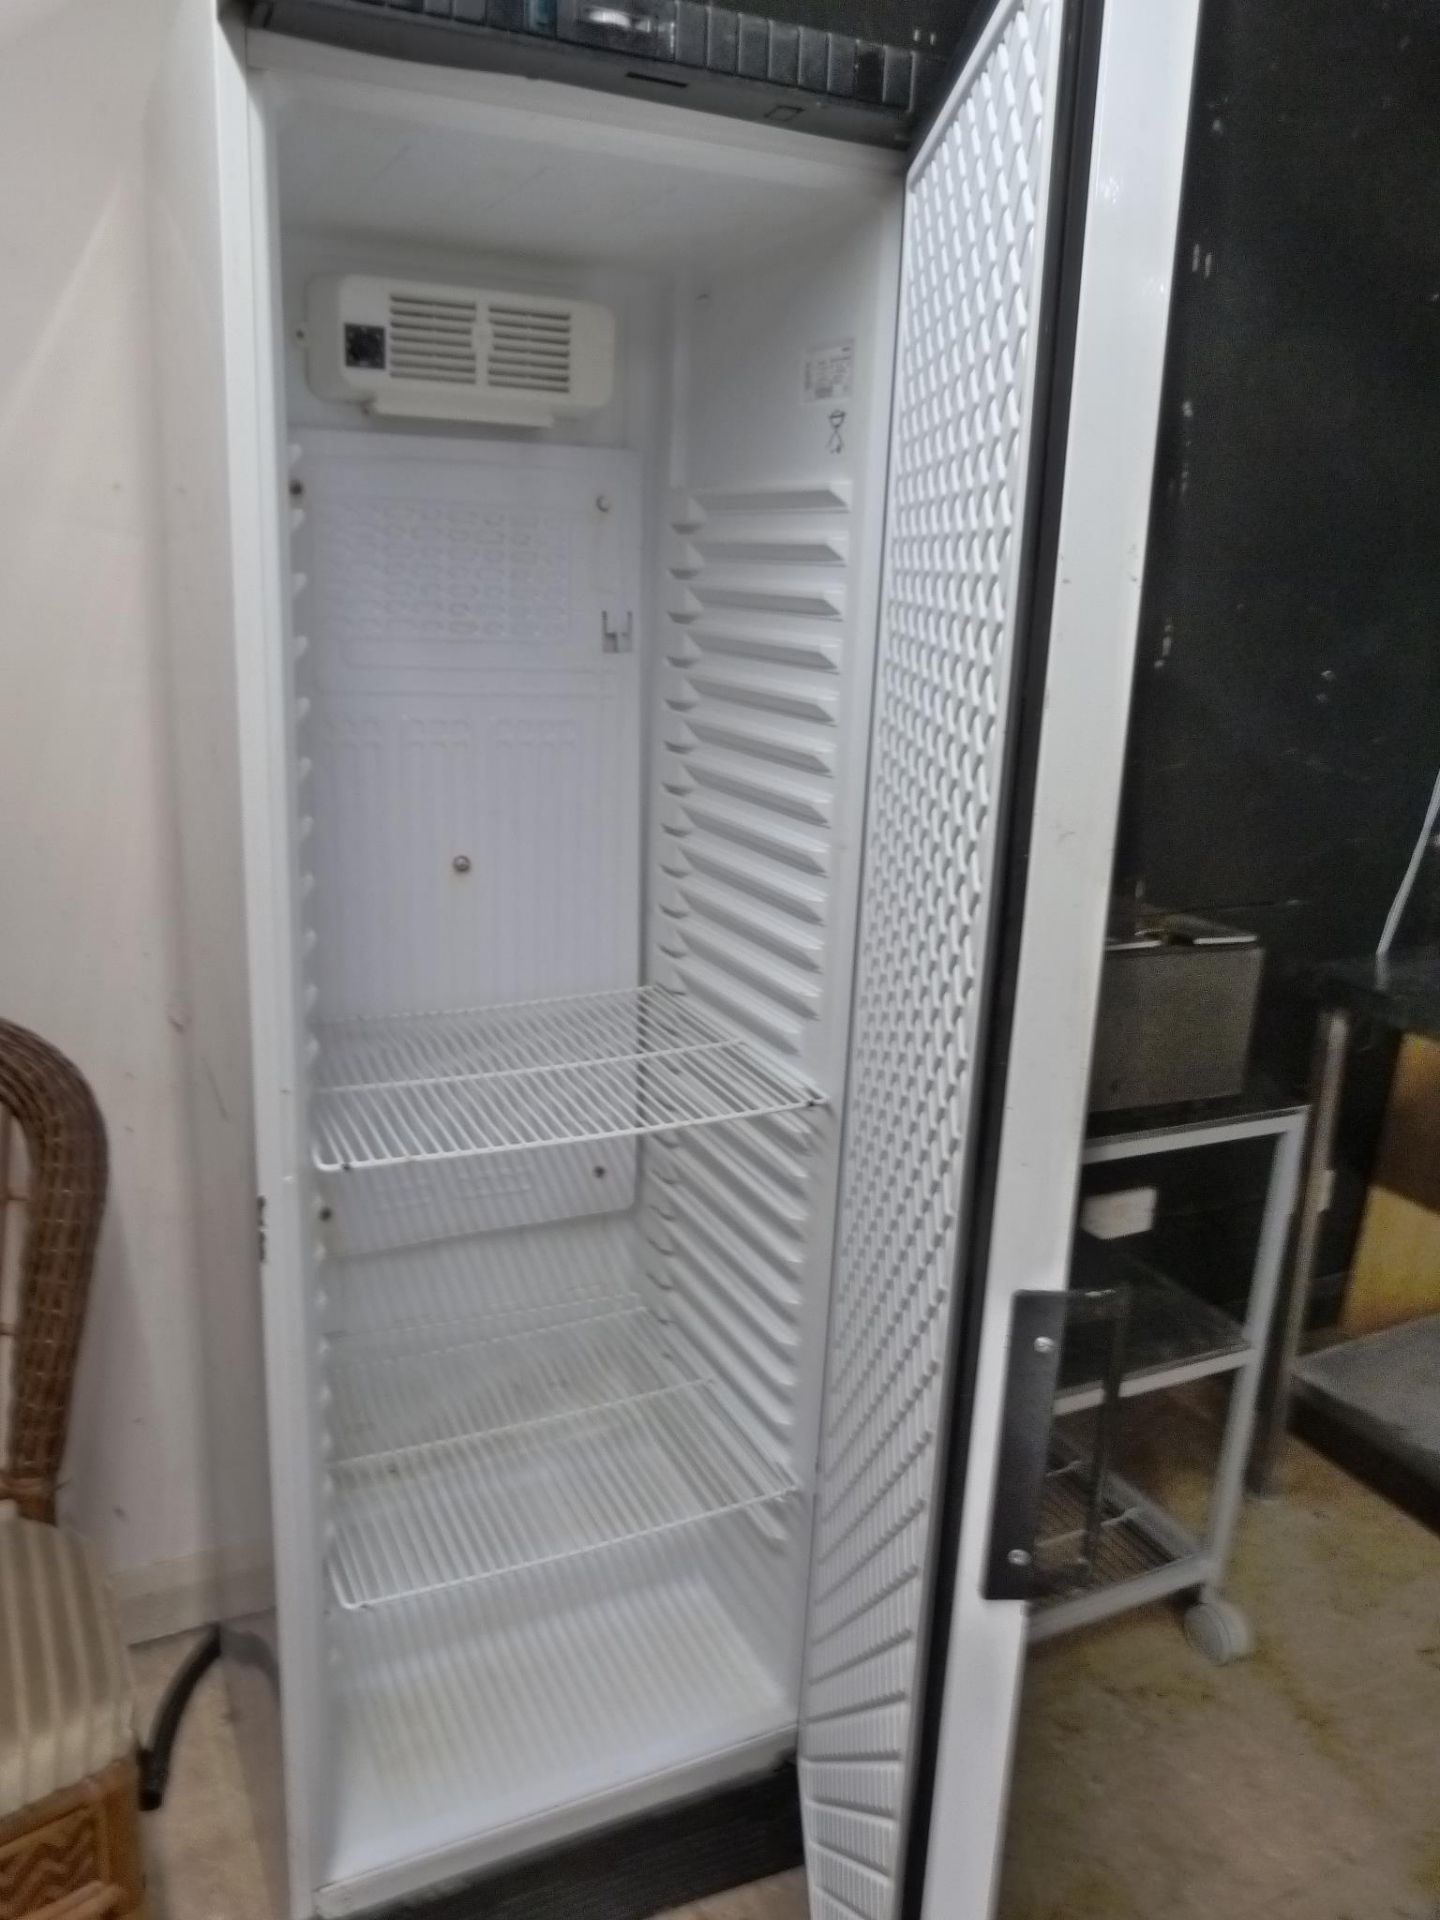 Trimco Upright Refrigerator